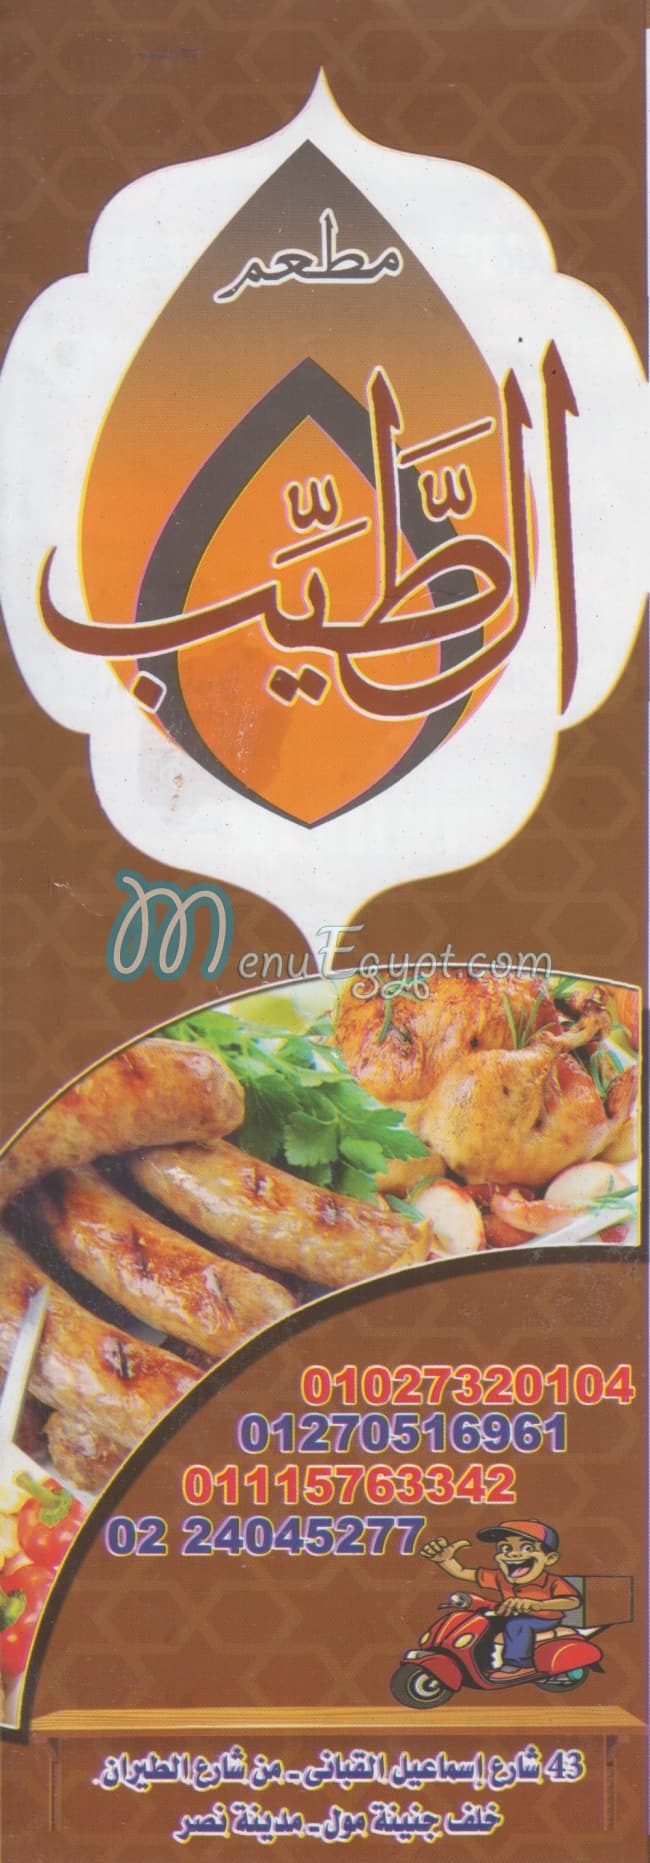 EL Tayeb menu